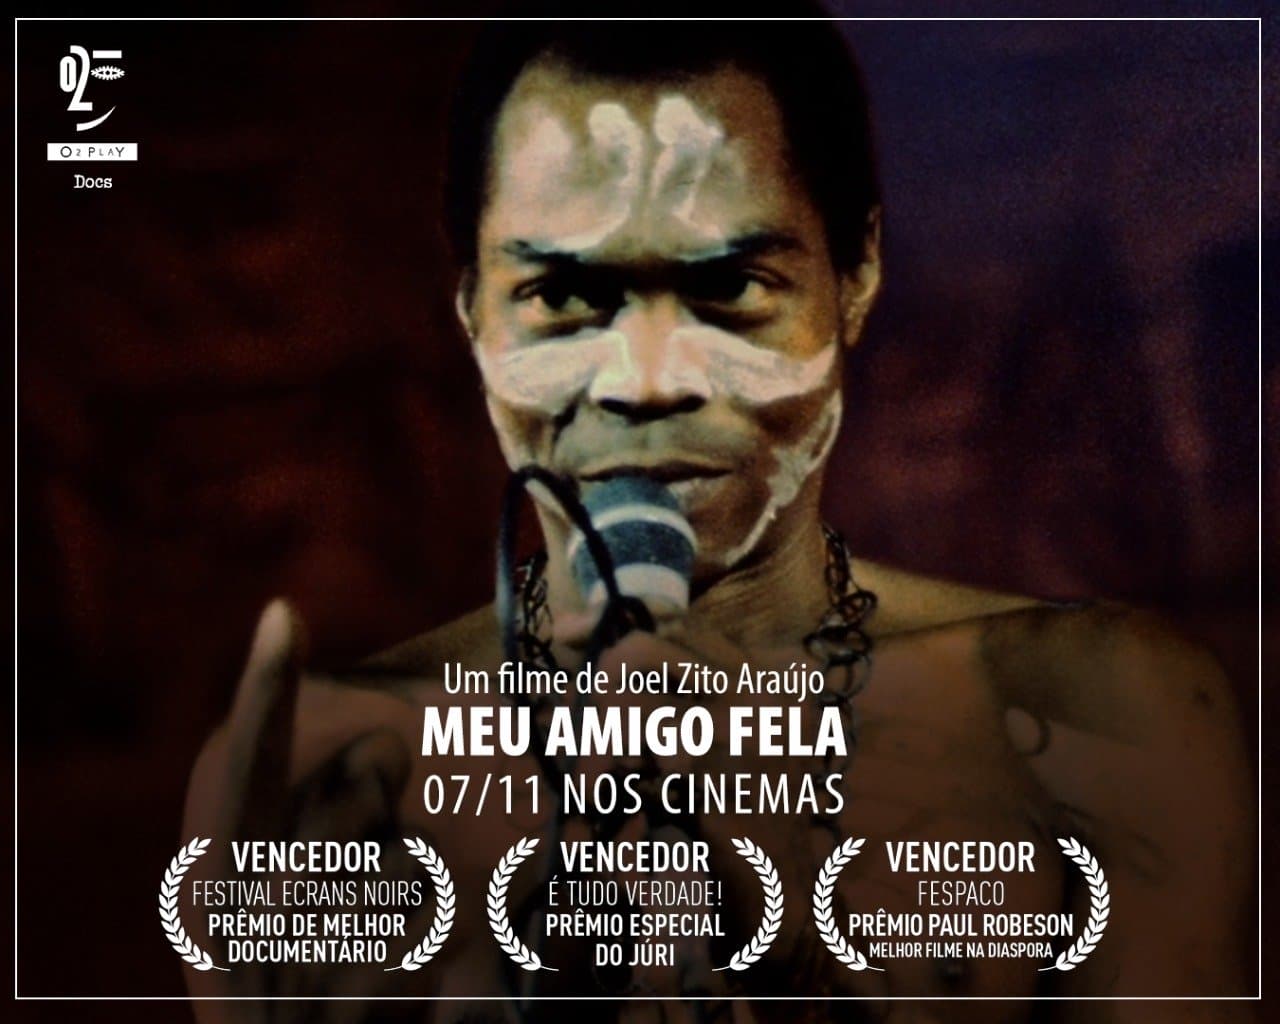 Meu Amigo Fela: documentário de Joel Zito Araújo estreia em São Paulo